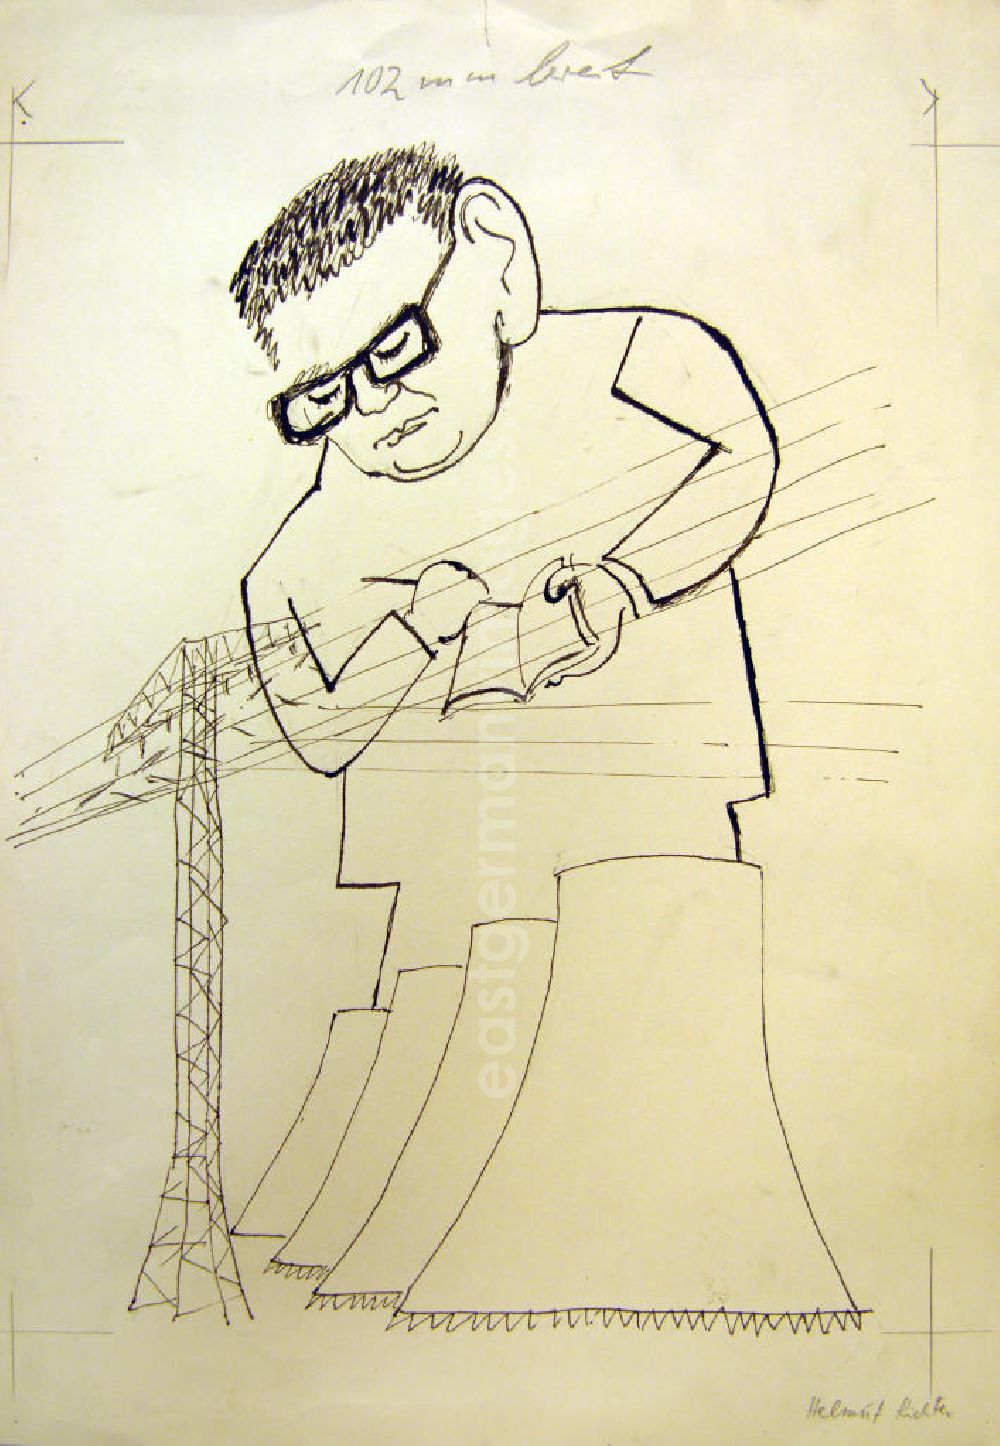 GDR picture archive: Berlin - Zeichnung von Herbert Sandberg Helmut Richter 27,5x35,5cm Feder. Eine Person mit Brille hält in der rechten Hand ein Buch und in der linken einen Stift, er steht hinter proportional kleinen Strommast und Türmen eines Kraftwerk und blickt herunter.